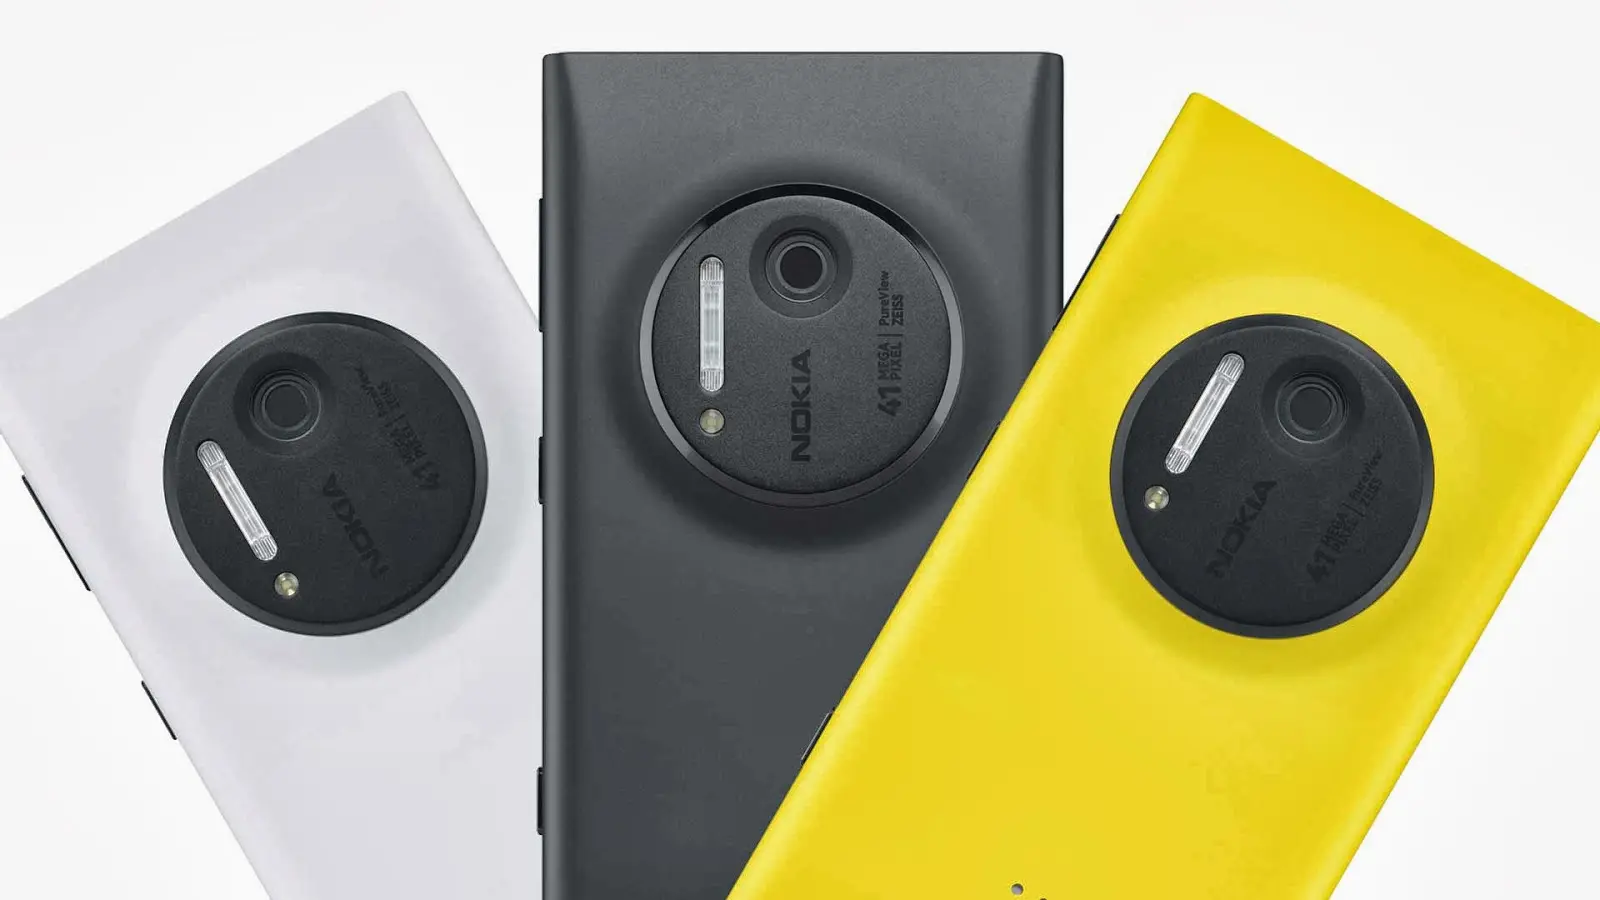 Nokia Pixel aparece con Snapdragon 200, 1 GB de RAM y Android Nougat